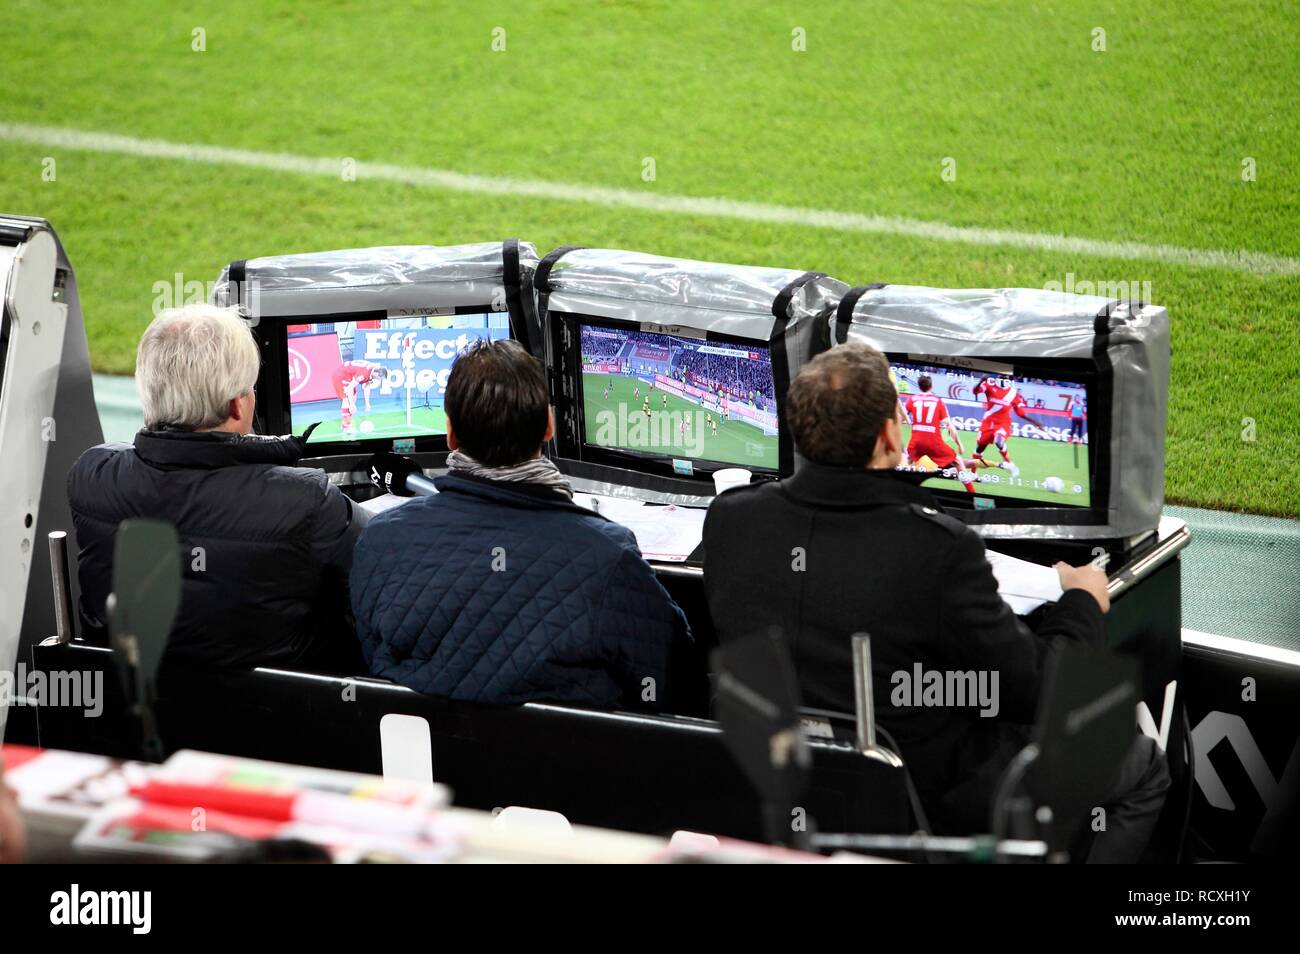 SKY-TV Bild Richtung am Rande eines Fußballplatz Zahlen während einer zweiten Liga Match, Fortuna Düsseldorf vs Dynamo Dresden Stockfoto